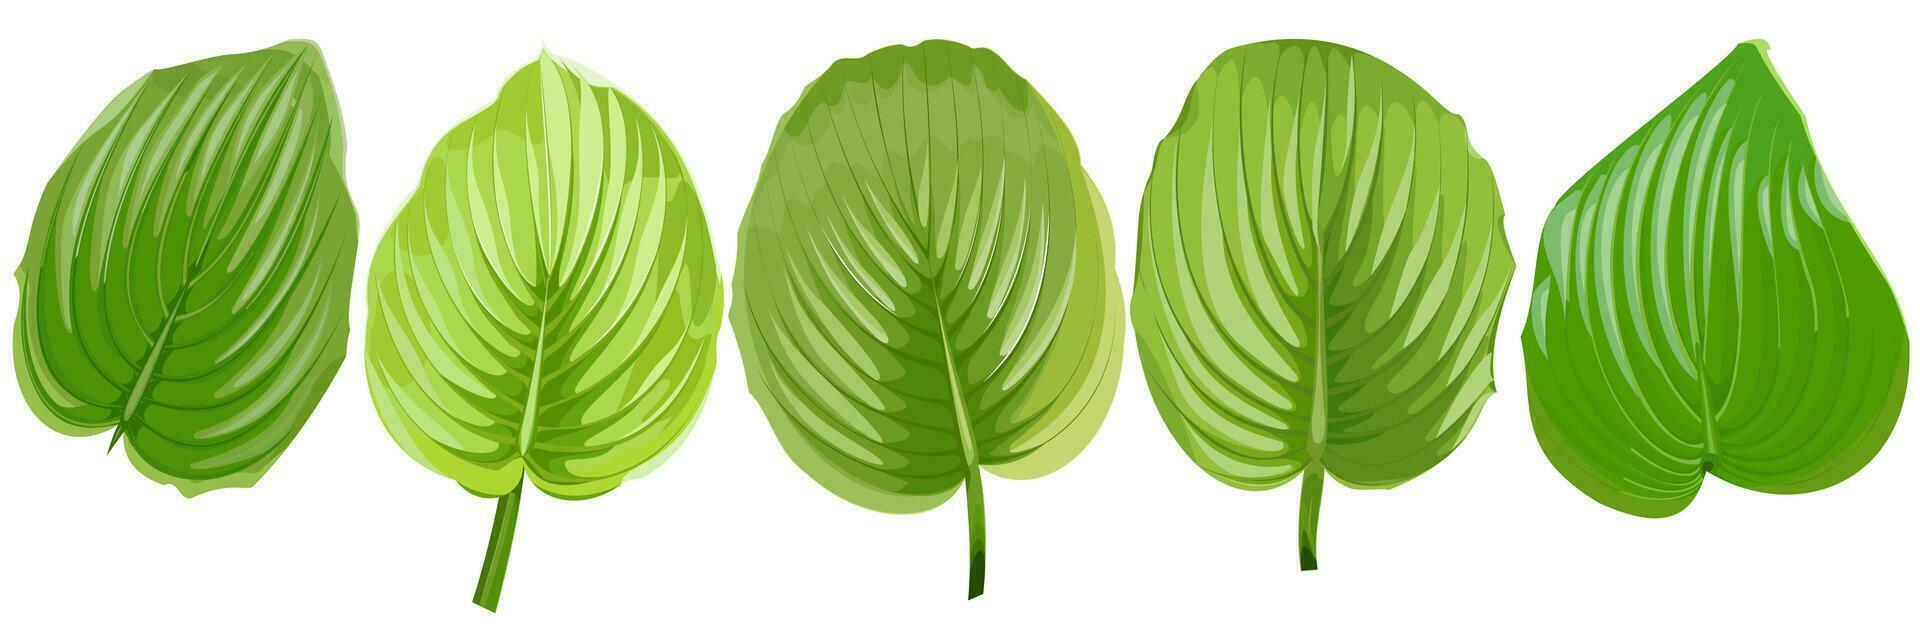 Set of green leaves of hosta flower on white background vector